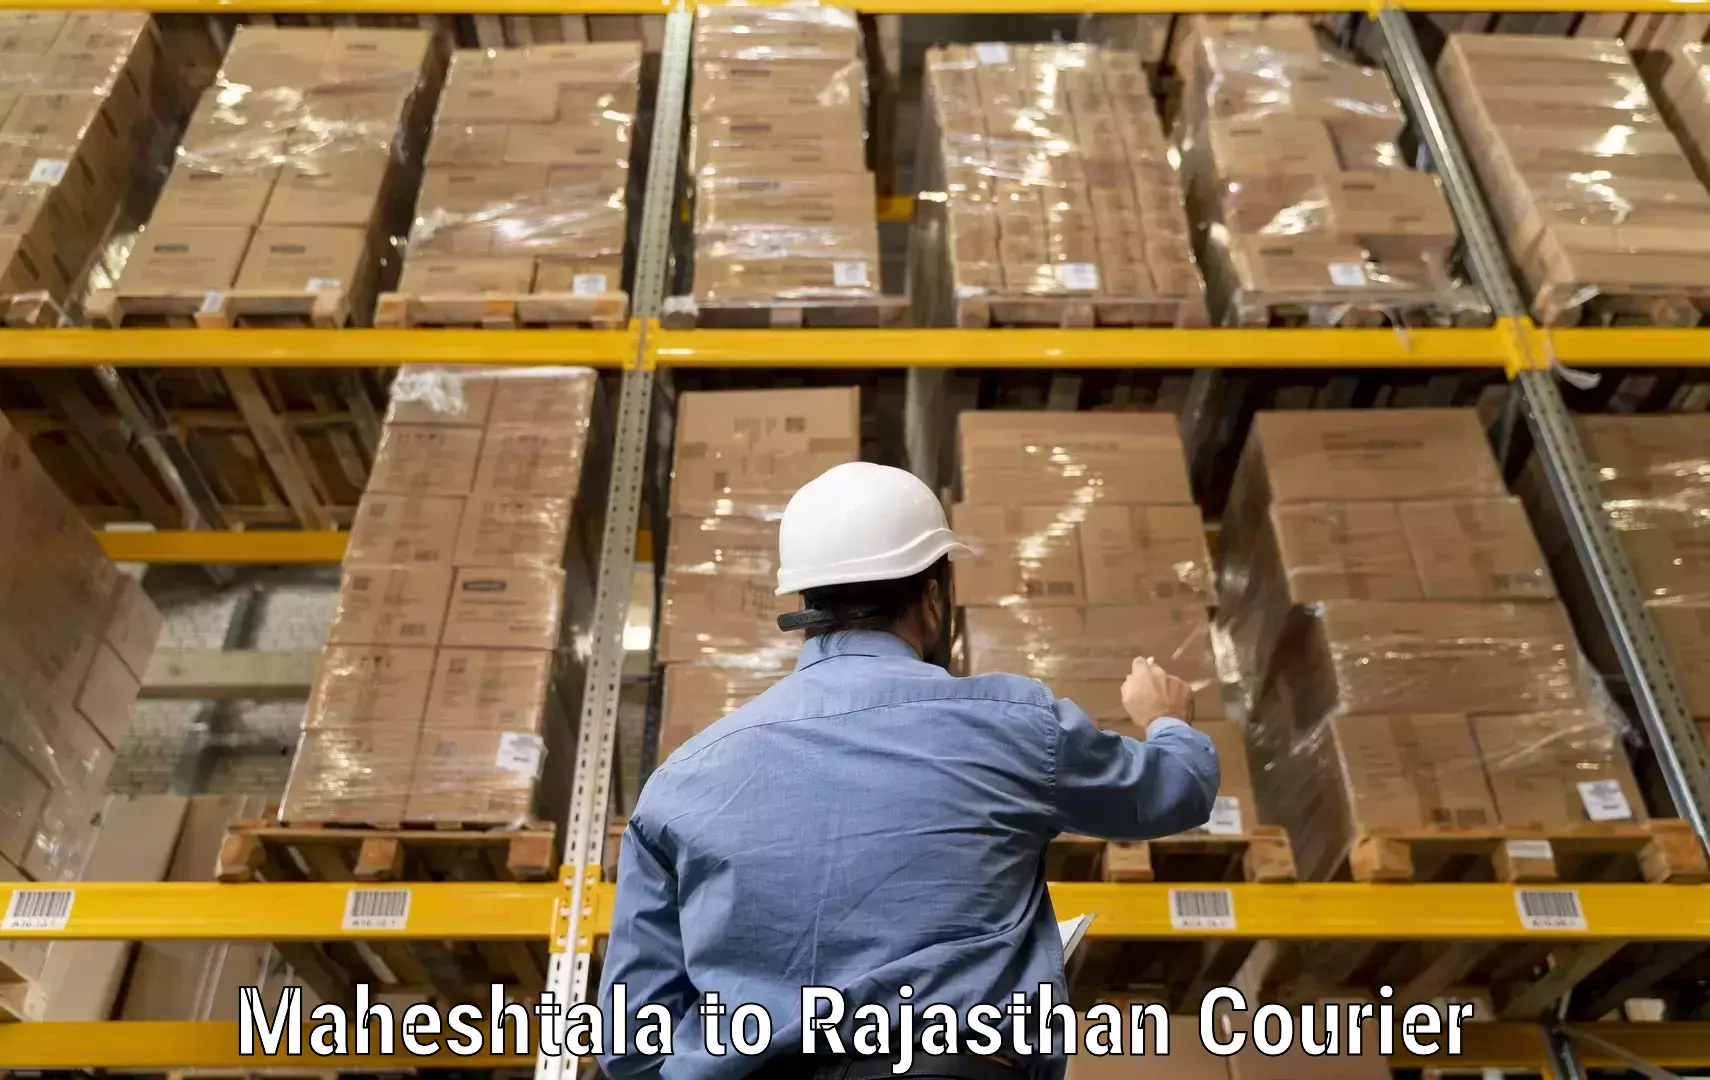 High-performance logistics Maheshtala to Sardarshahr